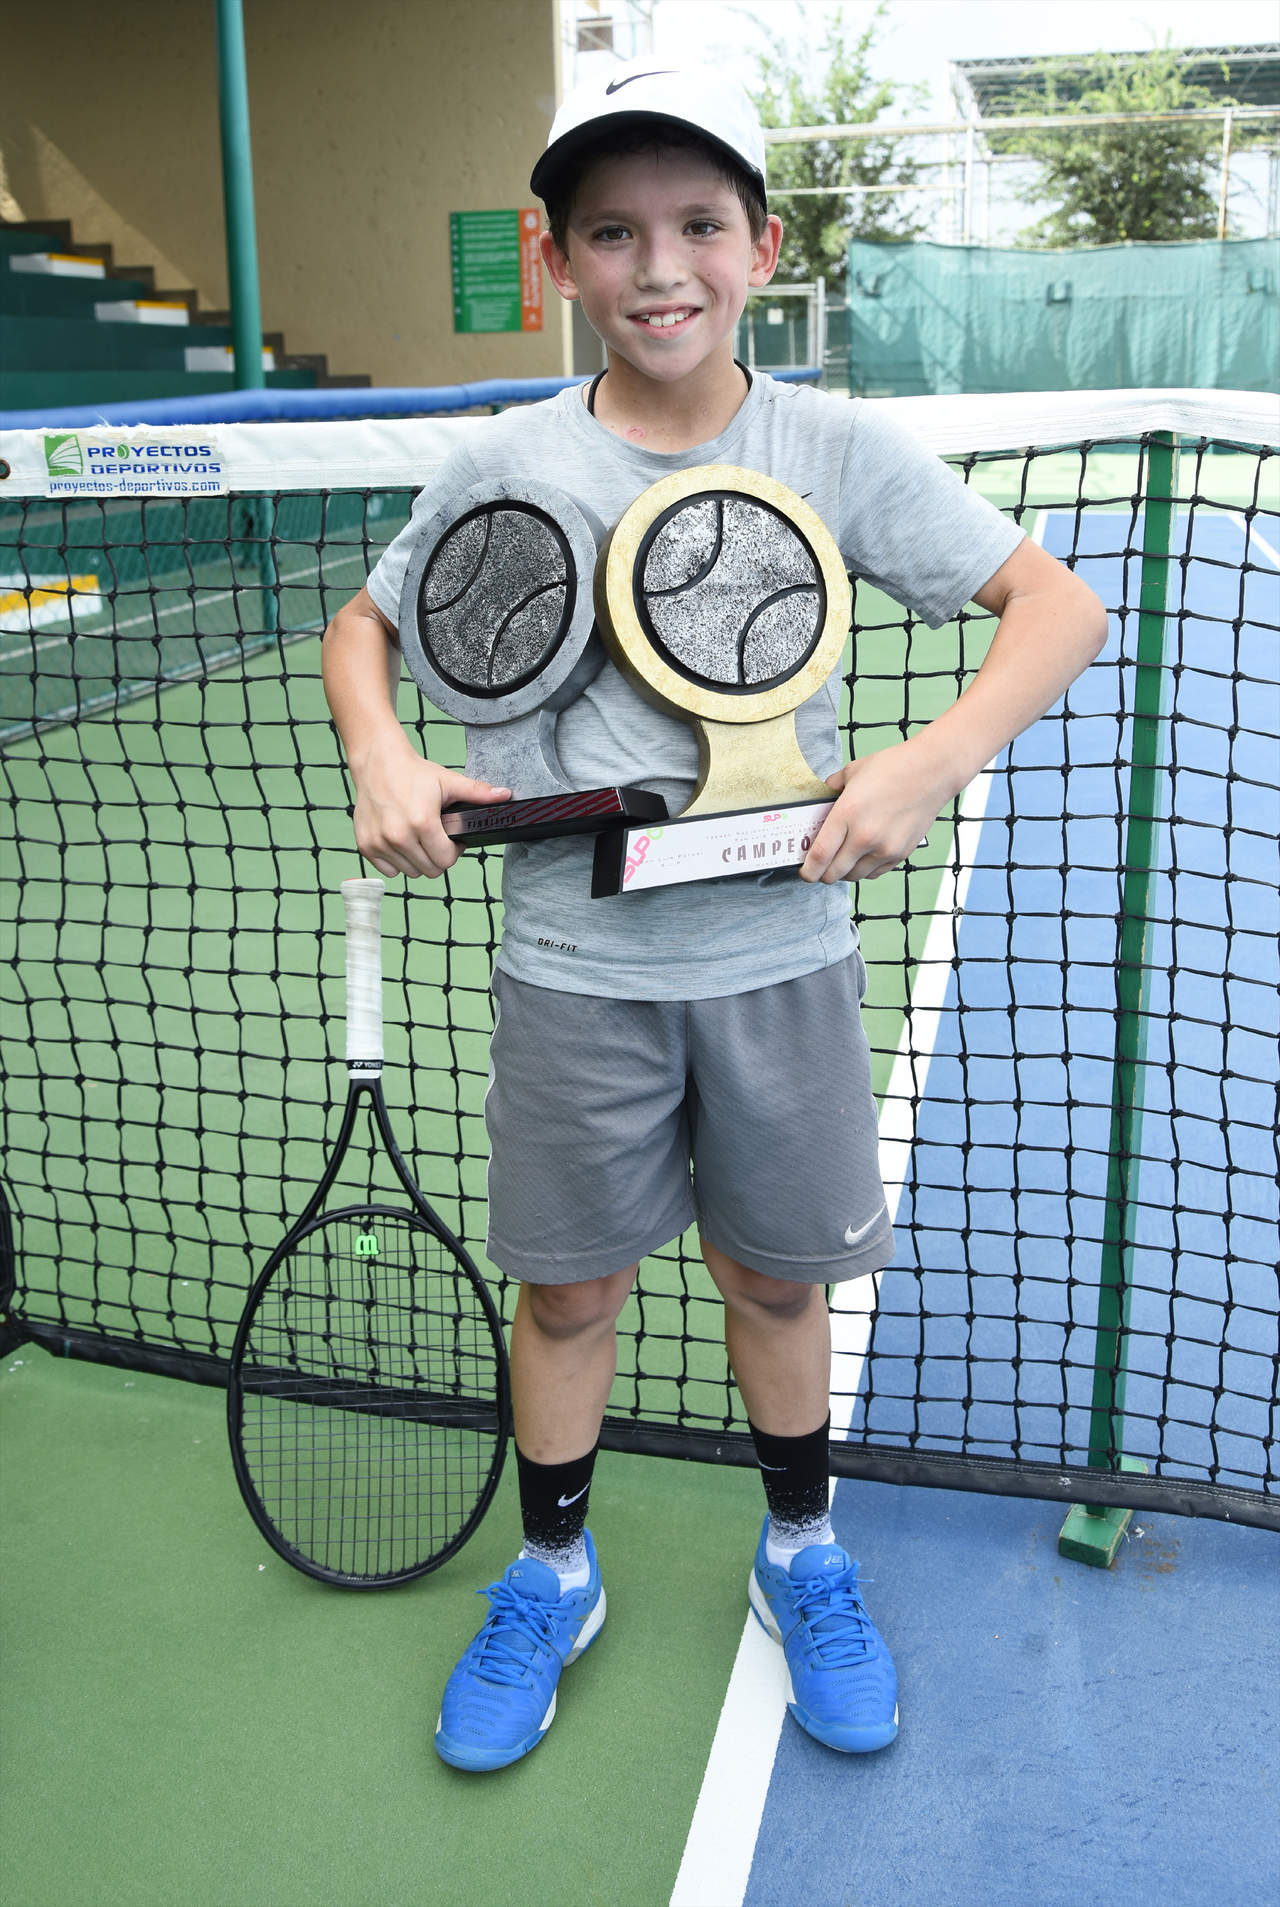 Flores Ávila luce sus trofeos de campeón nacional en singles y subcampeón en dobles, obtenidos en los torneos de la FMT. (Jesús Galindo)